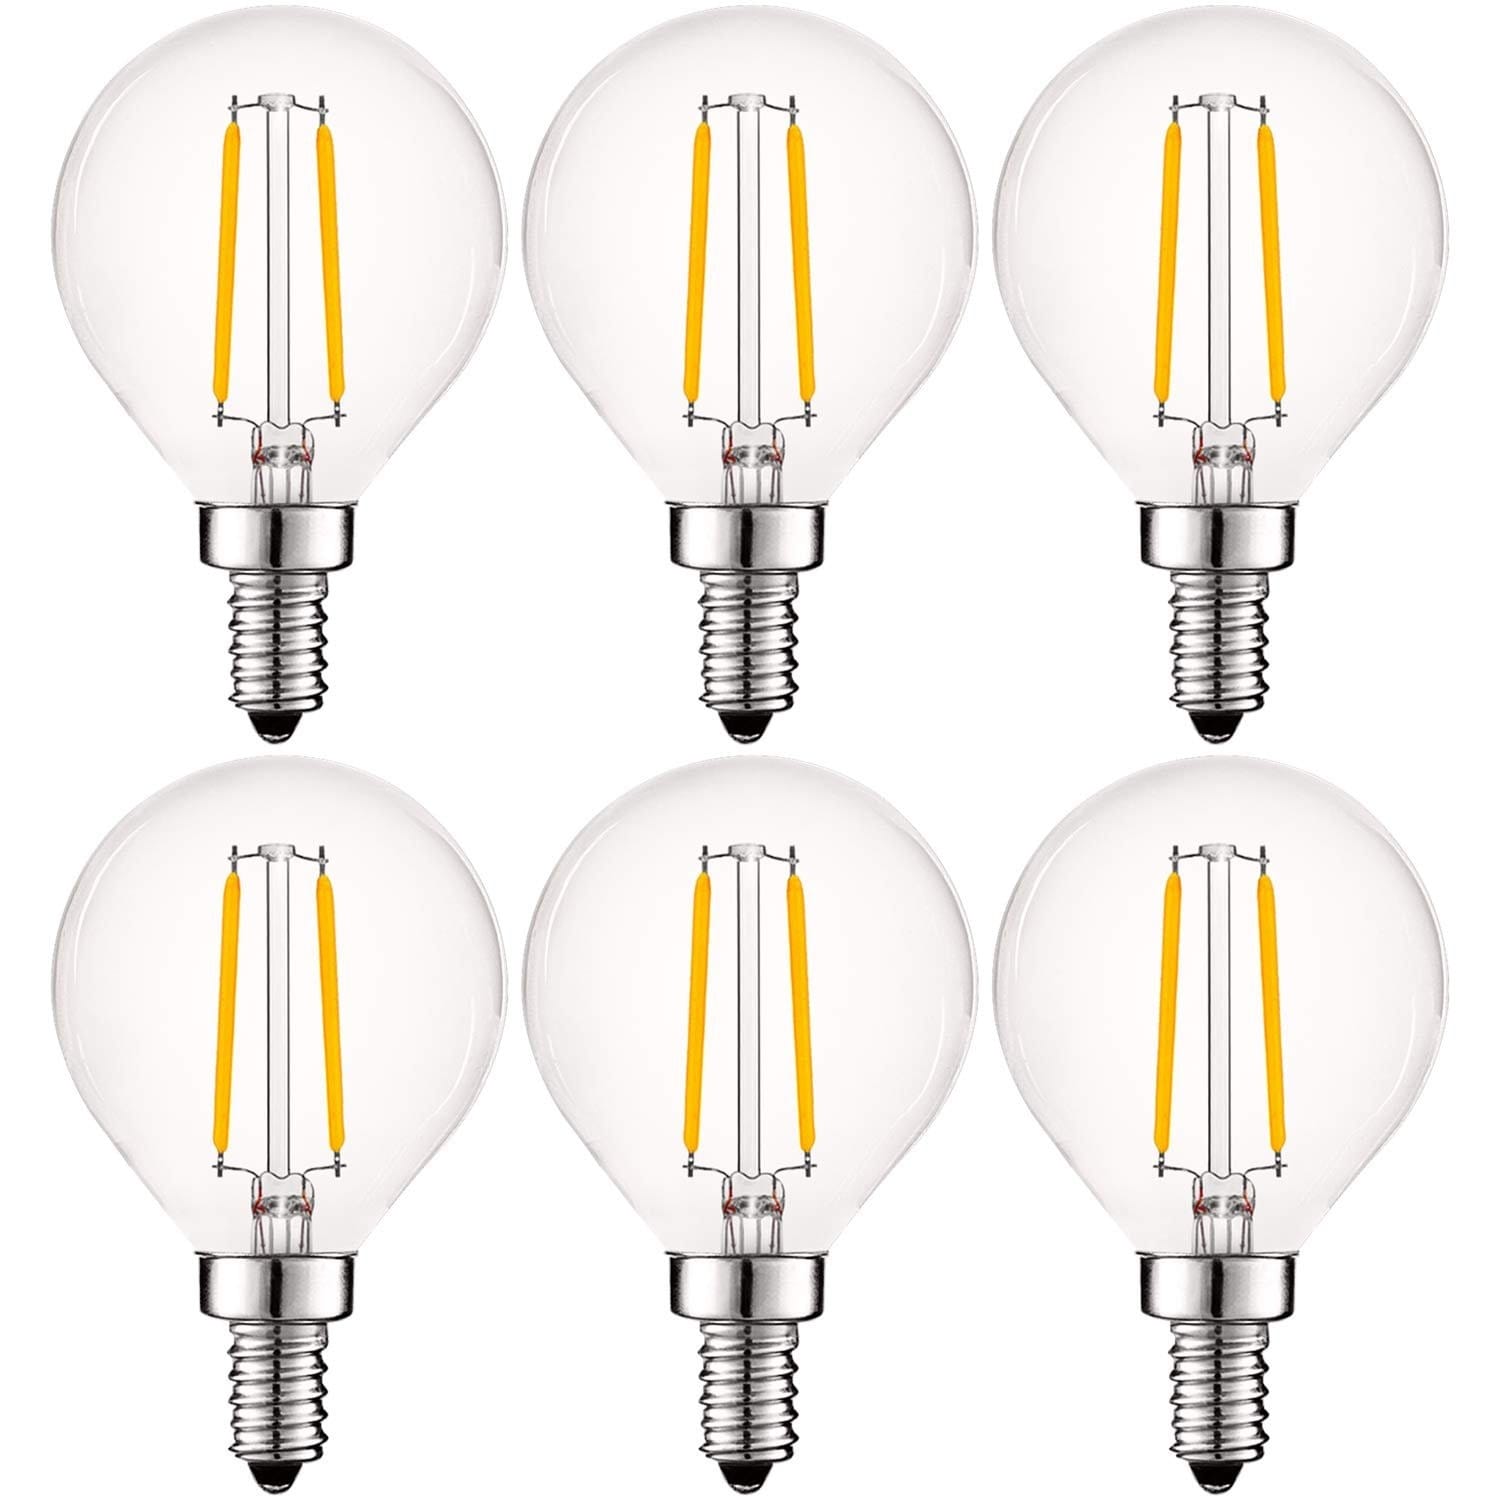 E12 LED Bulb,ProPOW 5W LED Candelabra Bulbs 40 Watt Equivalent Ceiling Fan Light Bulbs 6 Pack Soft White 2700K G14 LED Bulb Small Base for Vanity Mirror,Bedroom,Non-Dimmable,500 Lumens, 